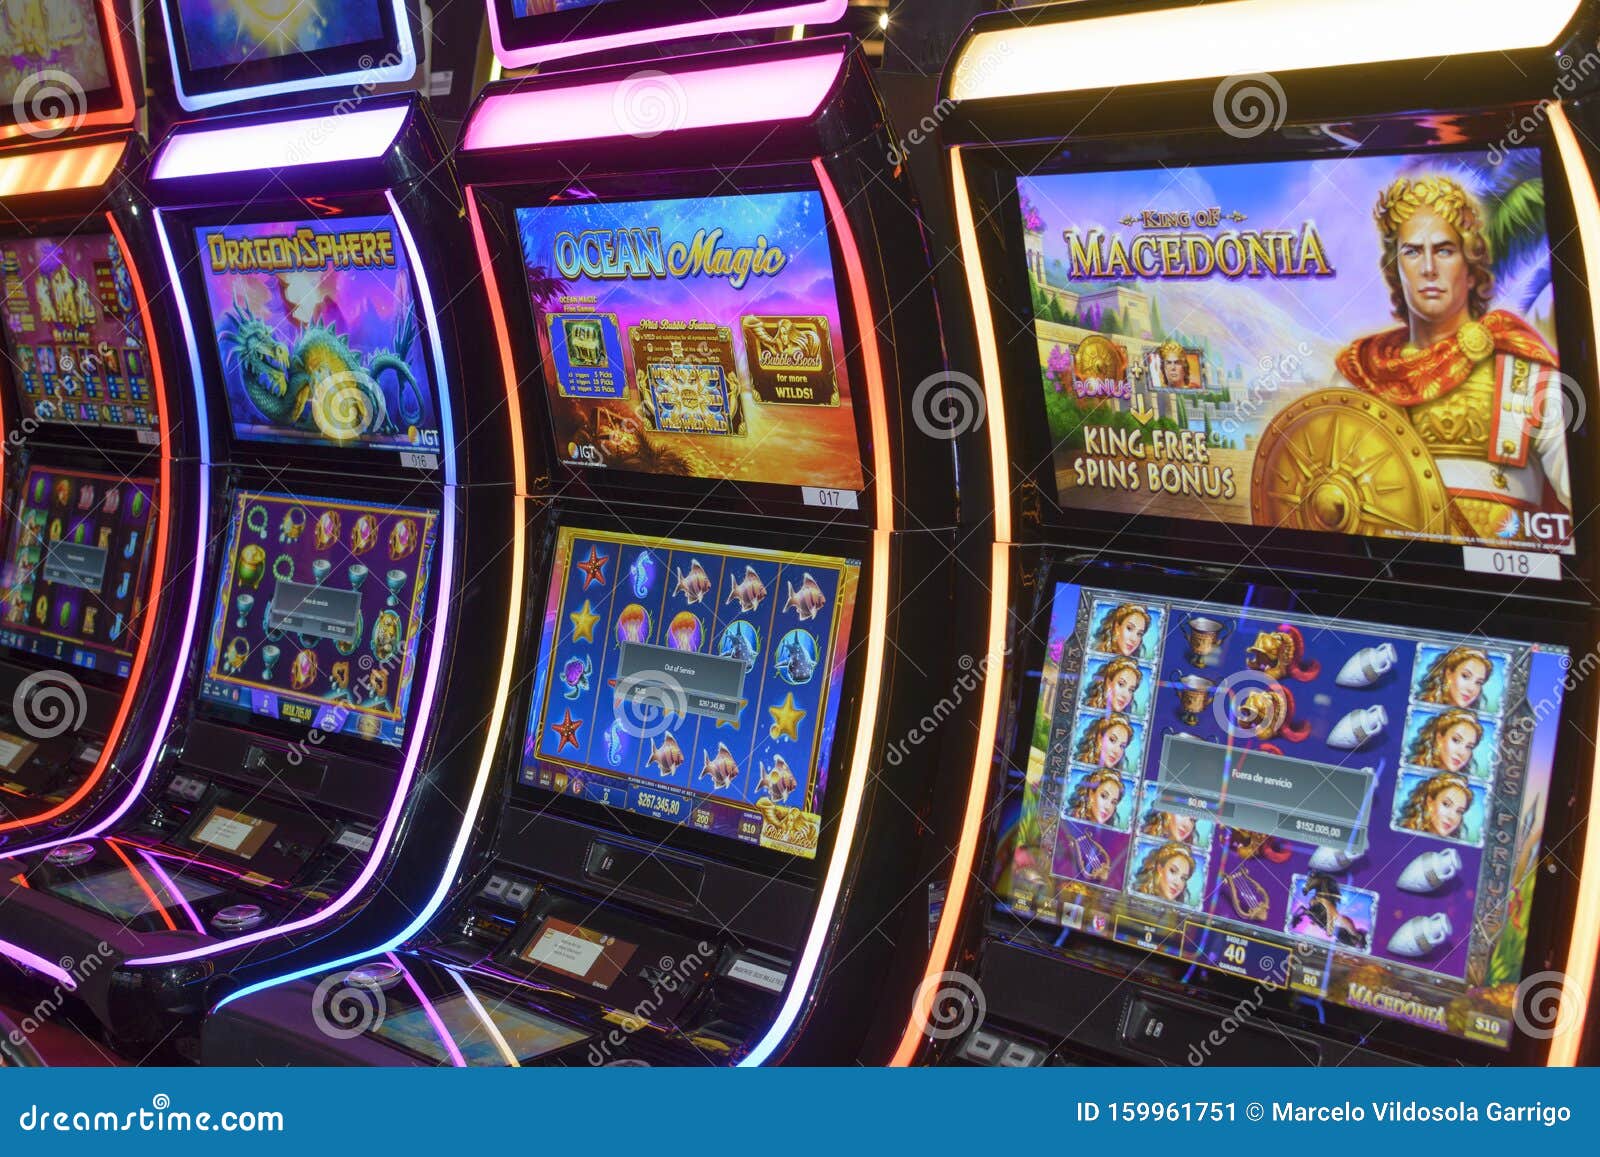 jugar casino online chile en 2021 - Predicciones